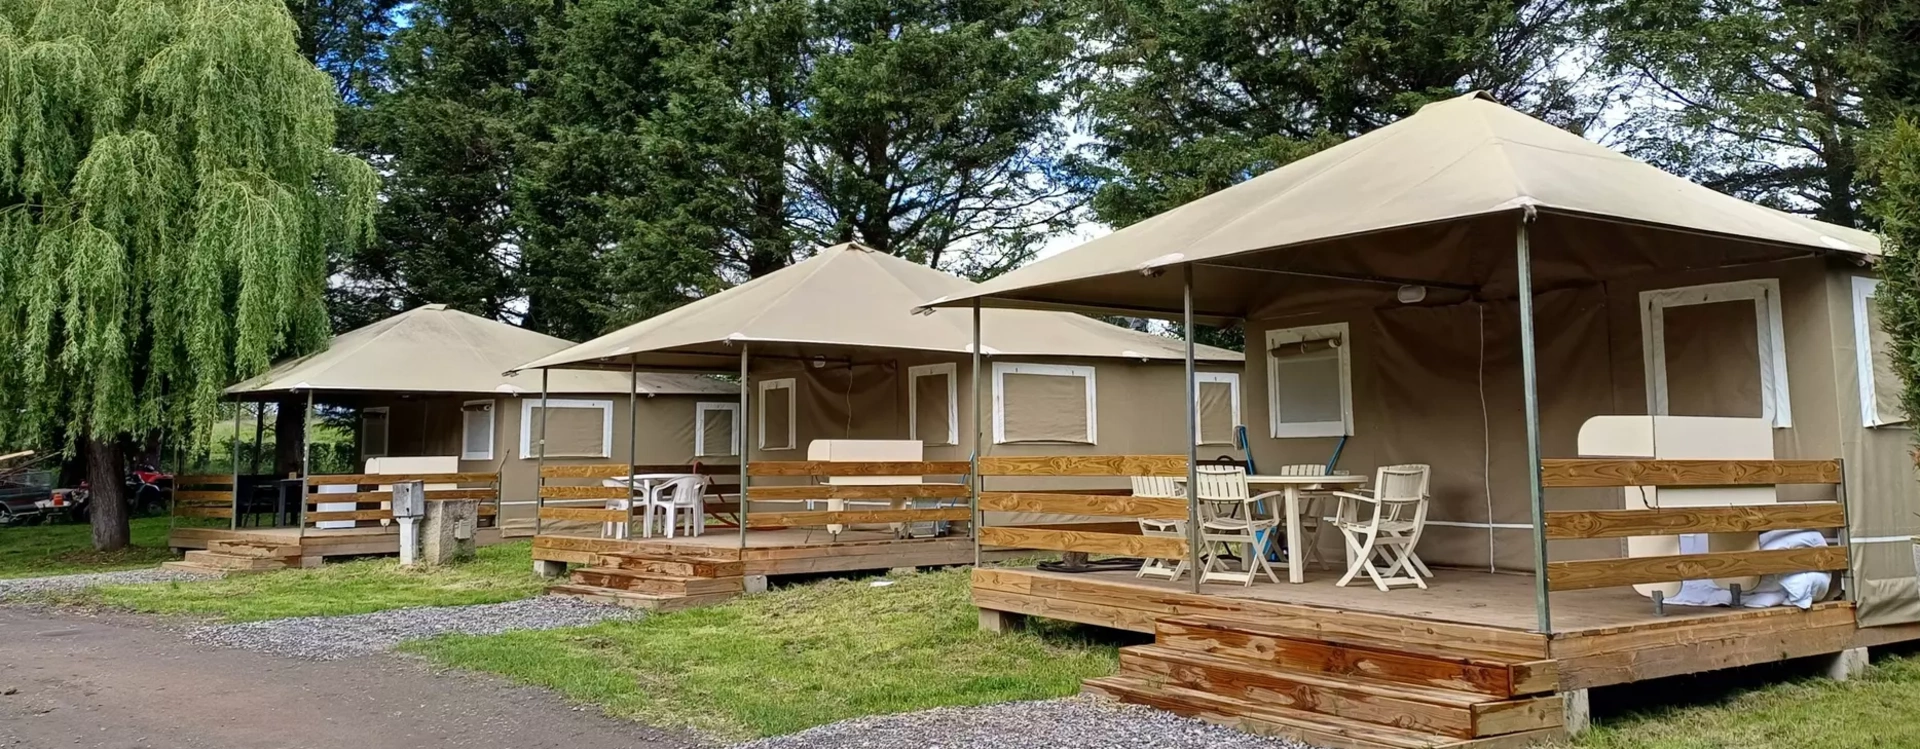 Le camping de Paulhaguet, anciennement la Fridière, situé à la Vigne dans le 43 Hauteloire